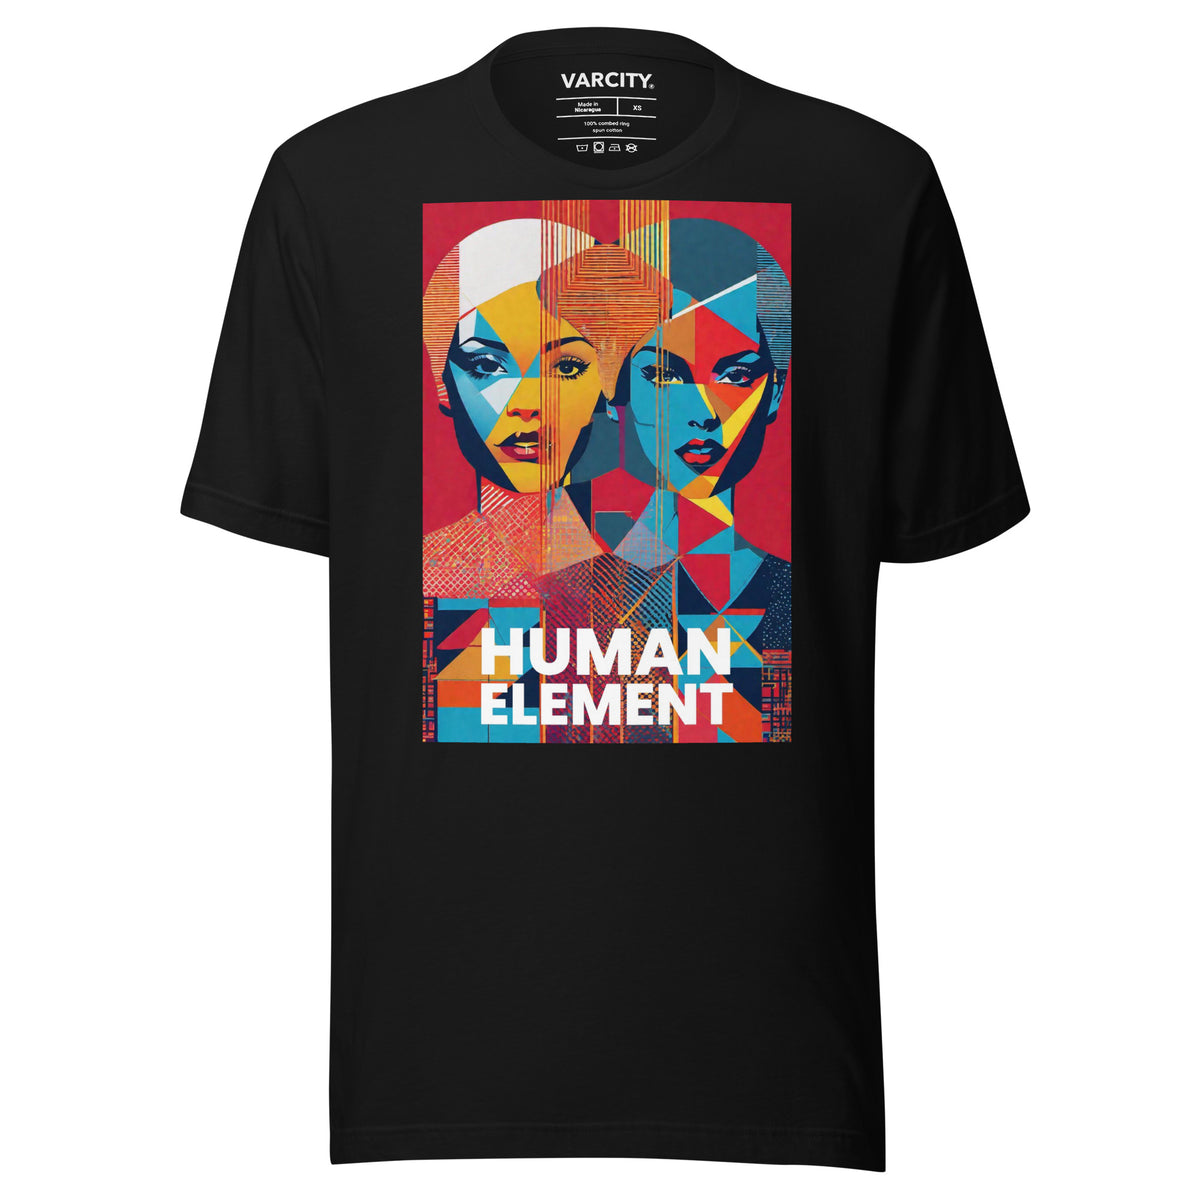 Human Element Bey Pop Art Unisex T-Shirt